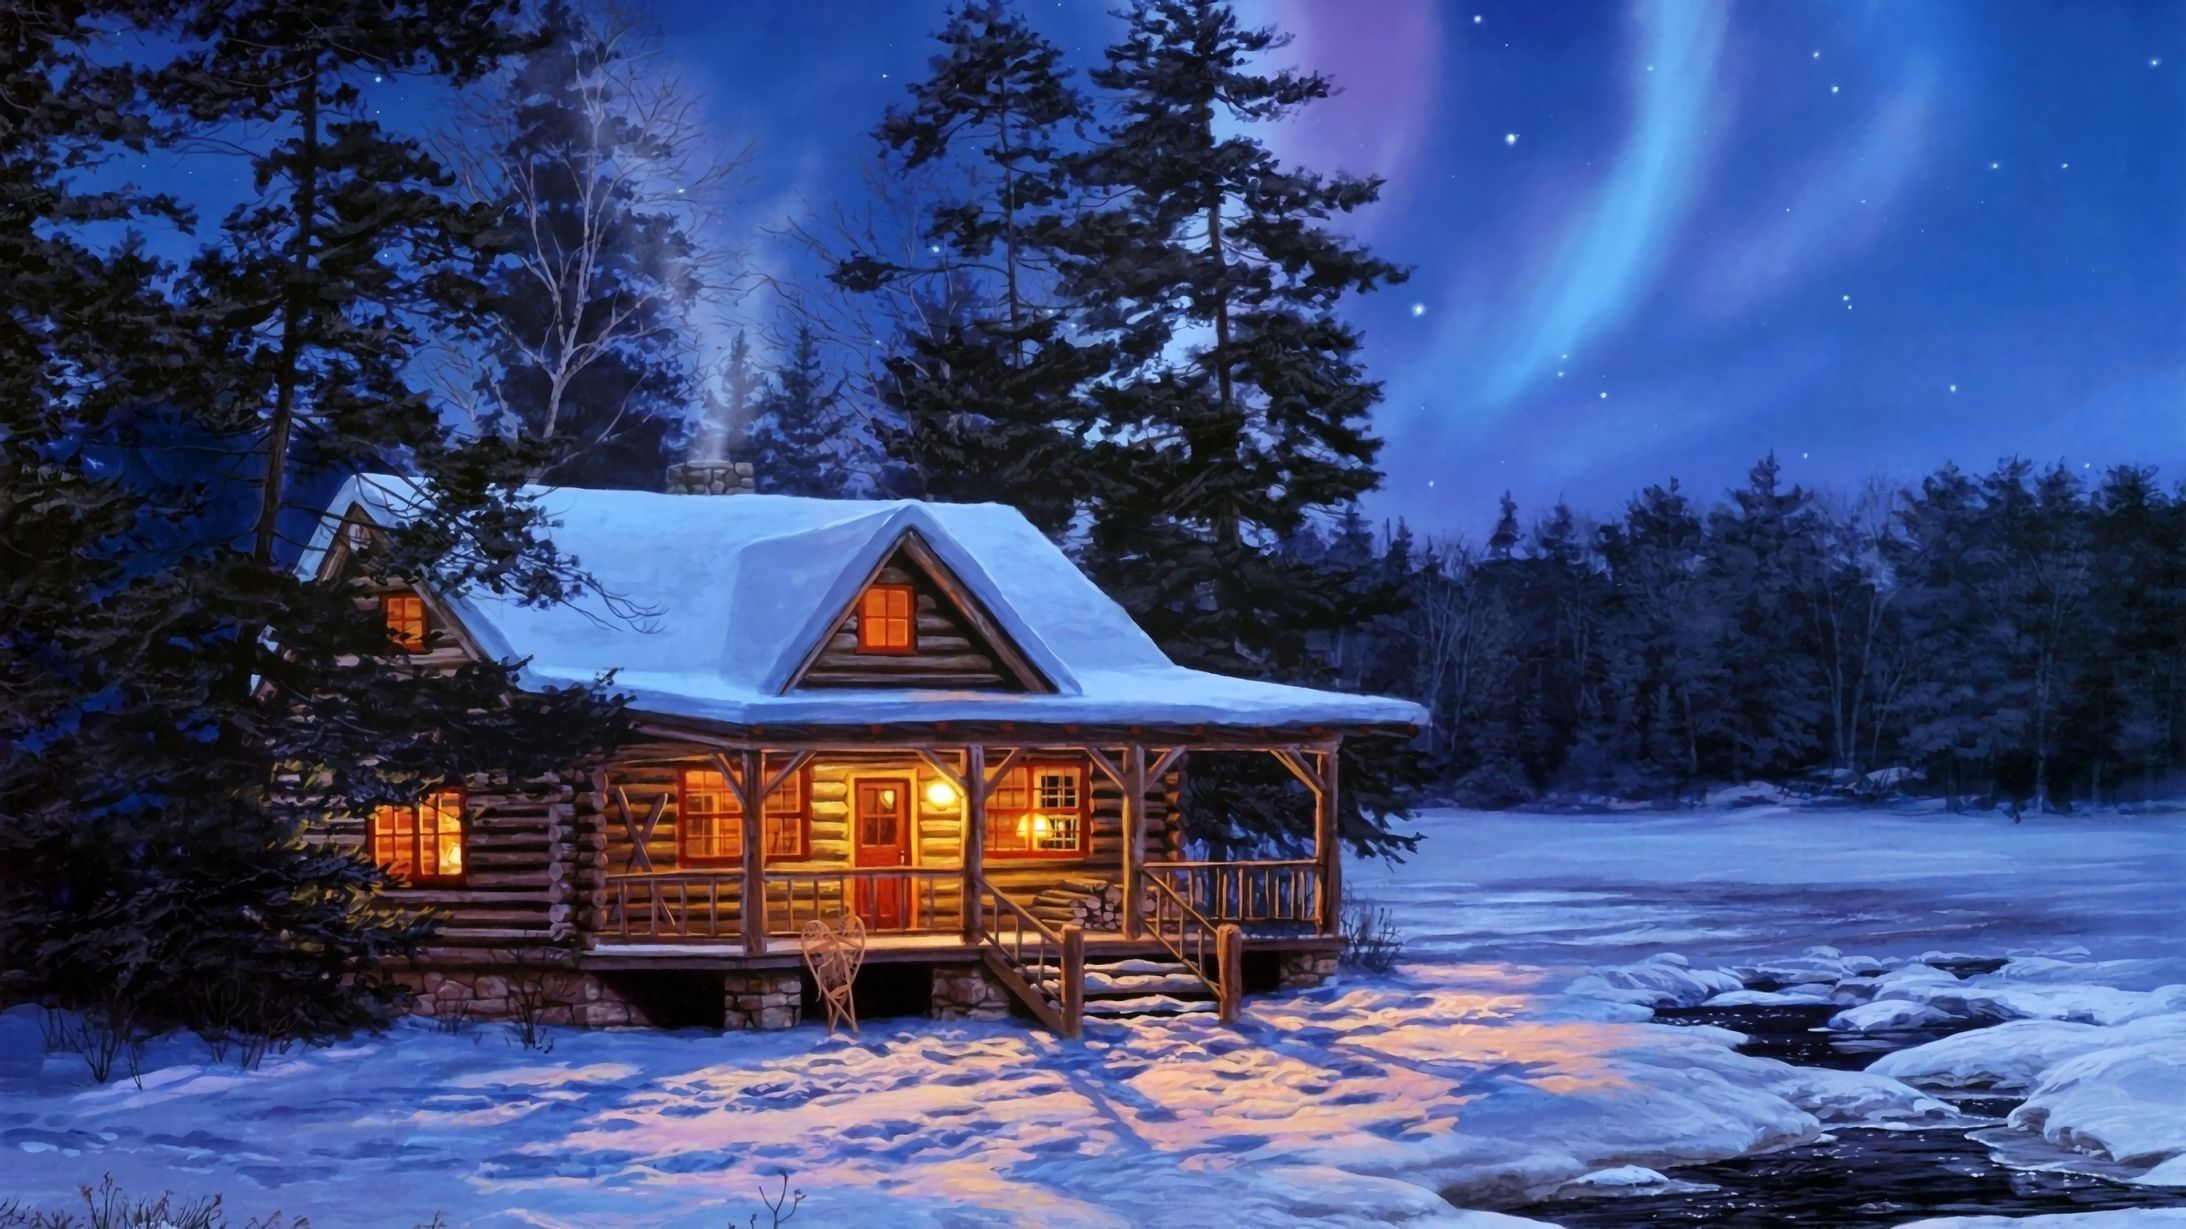 Скачать обои бесплатно Зима, Небо, Снег, Свет, Дерево, Домик, Художественные картинка на рабочий стол ПК